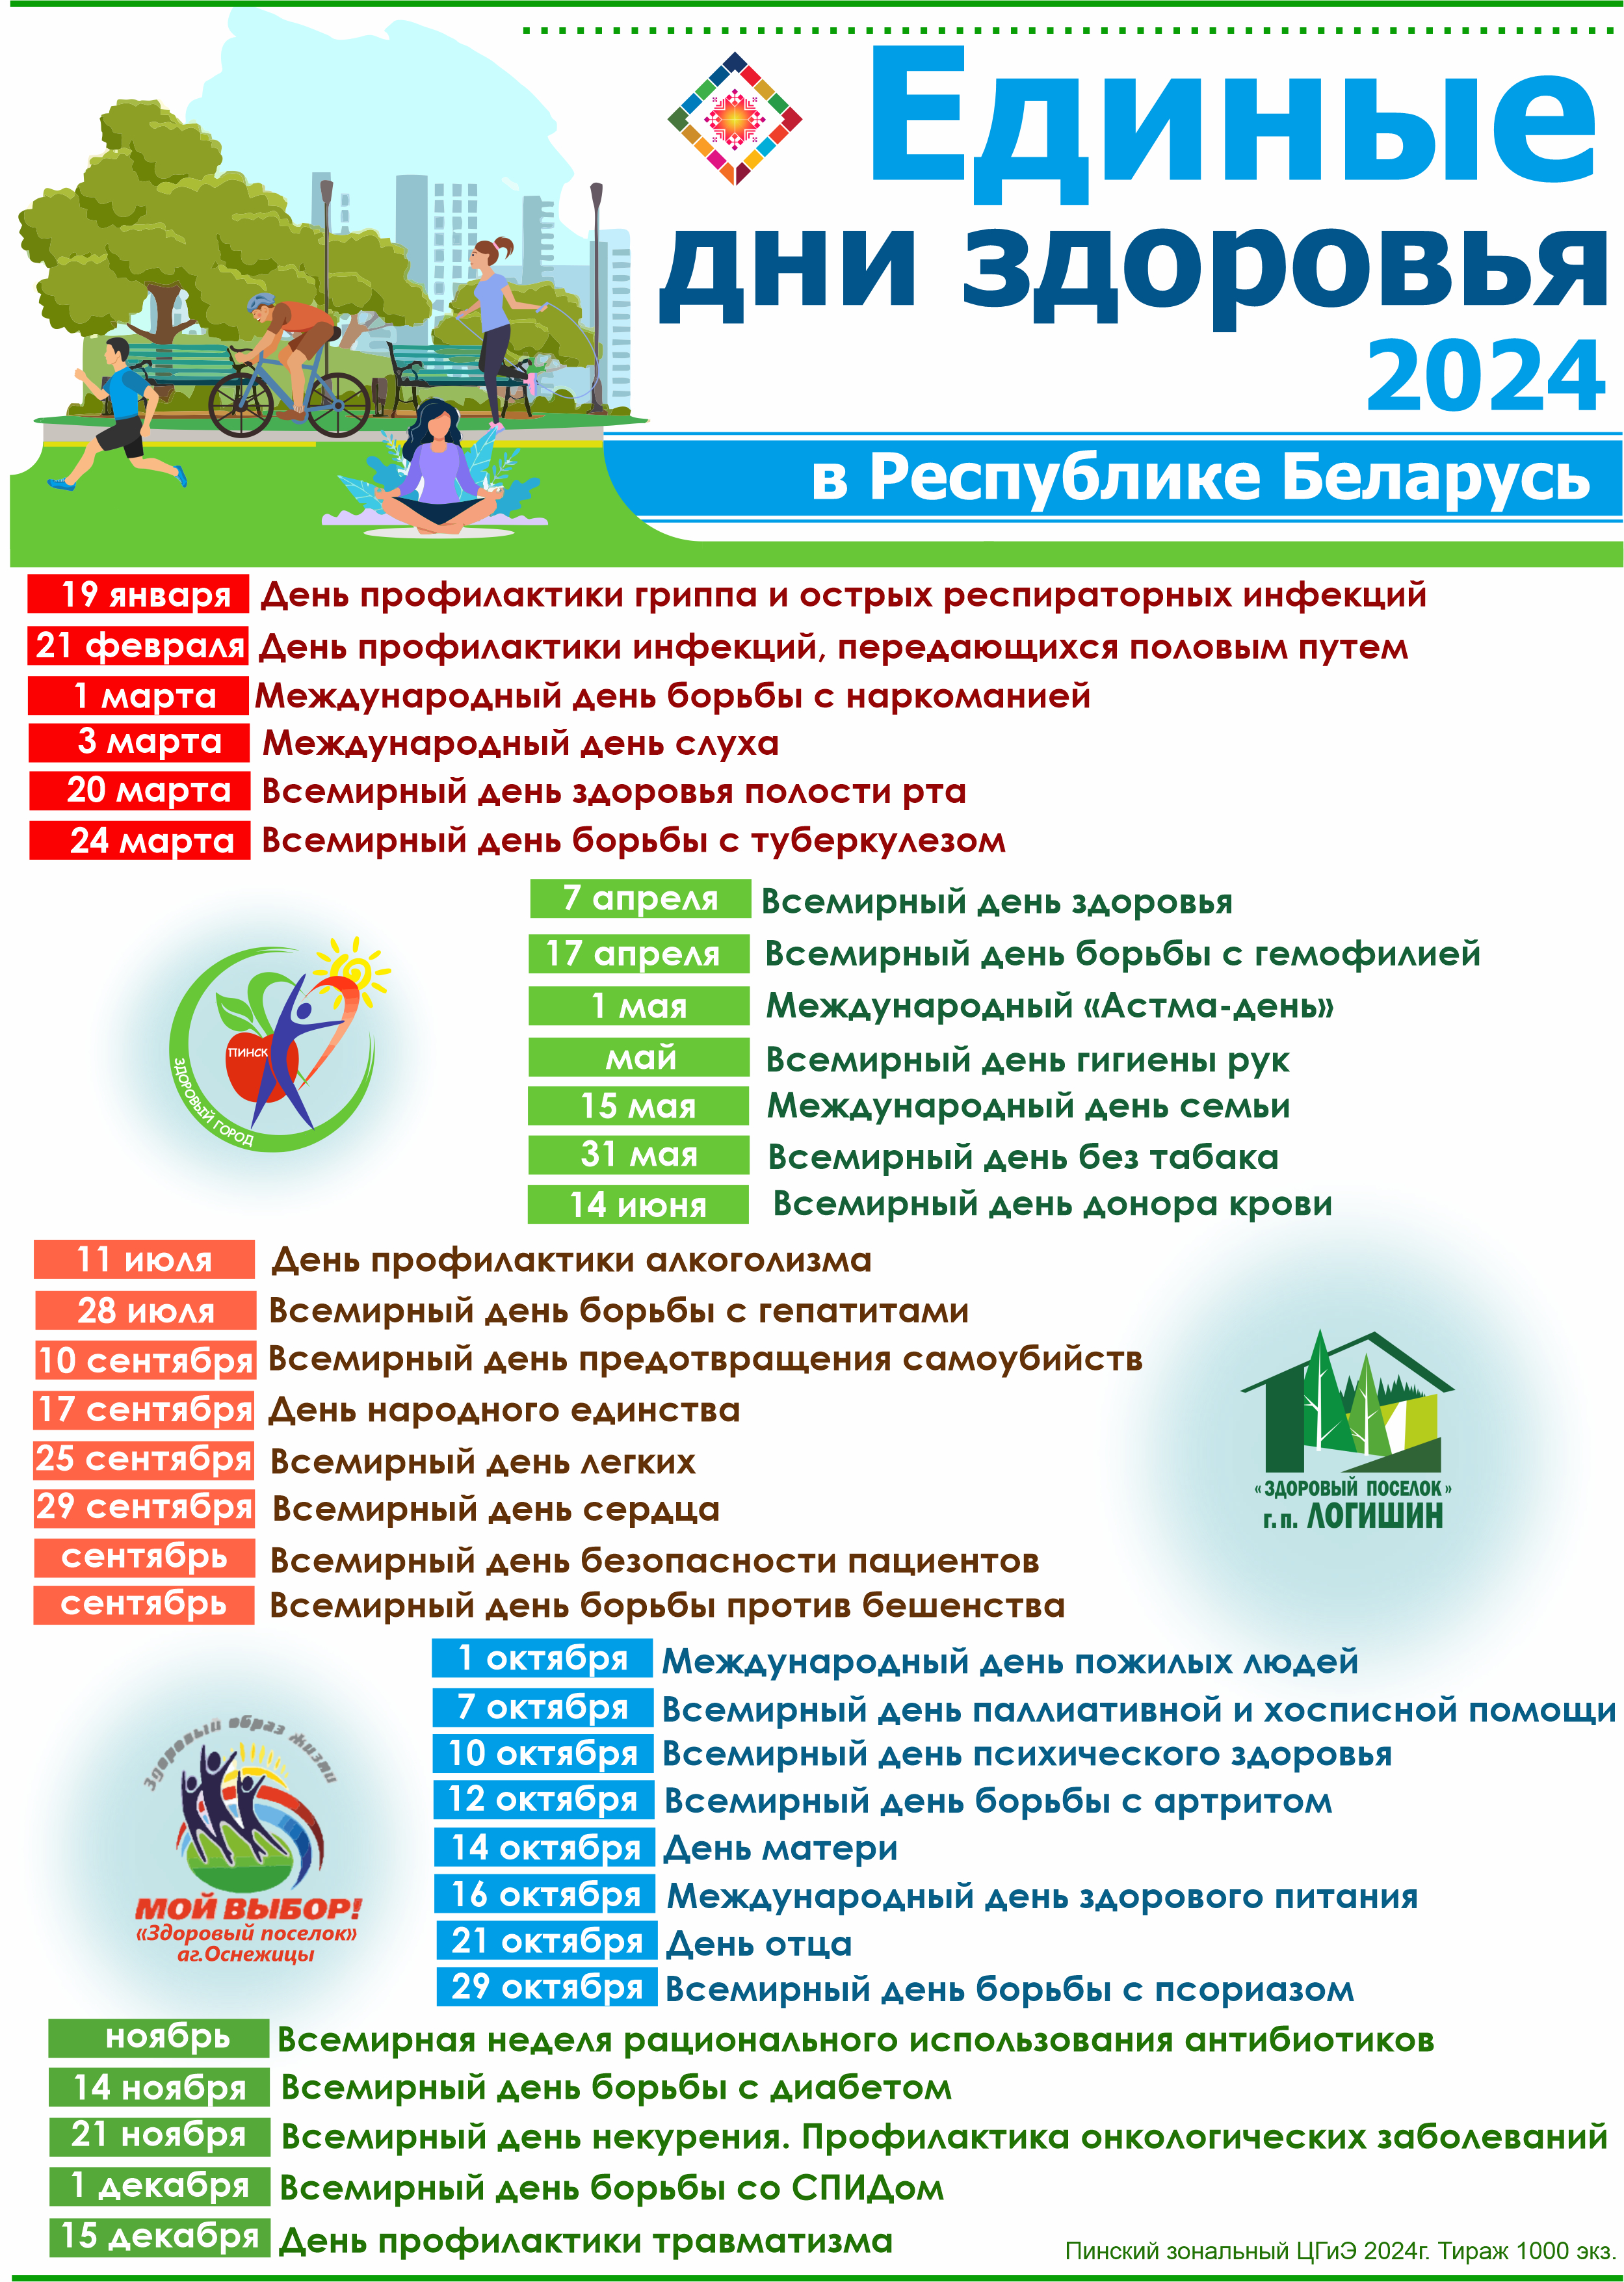 Календарь Единых дней здоровья в Республике Беларусь на 2024 год